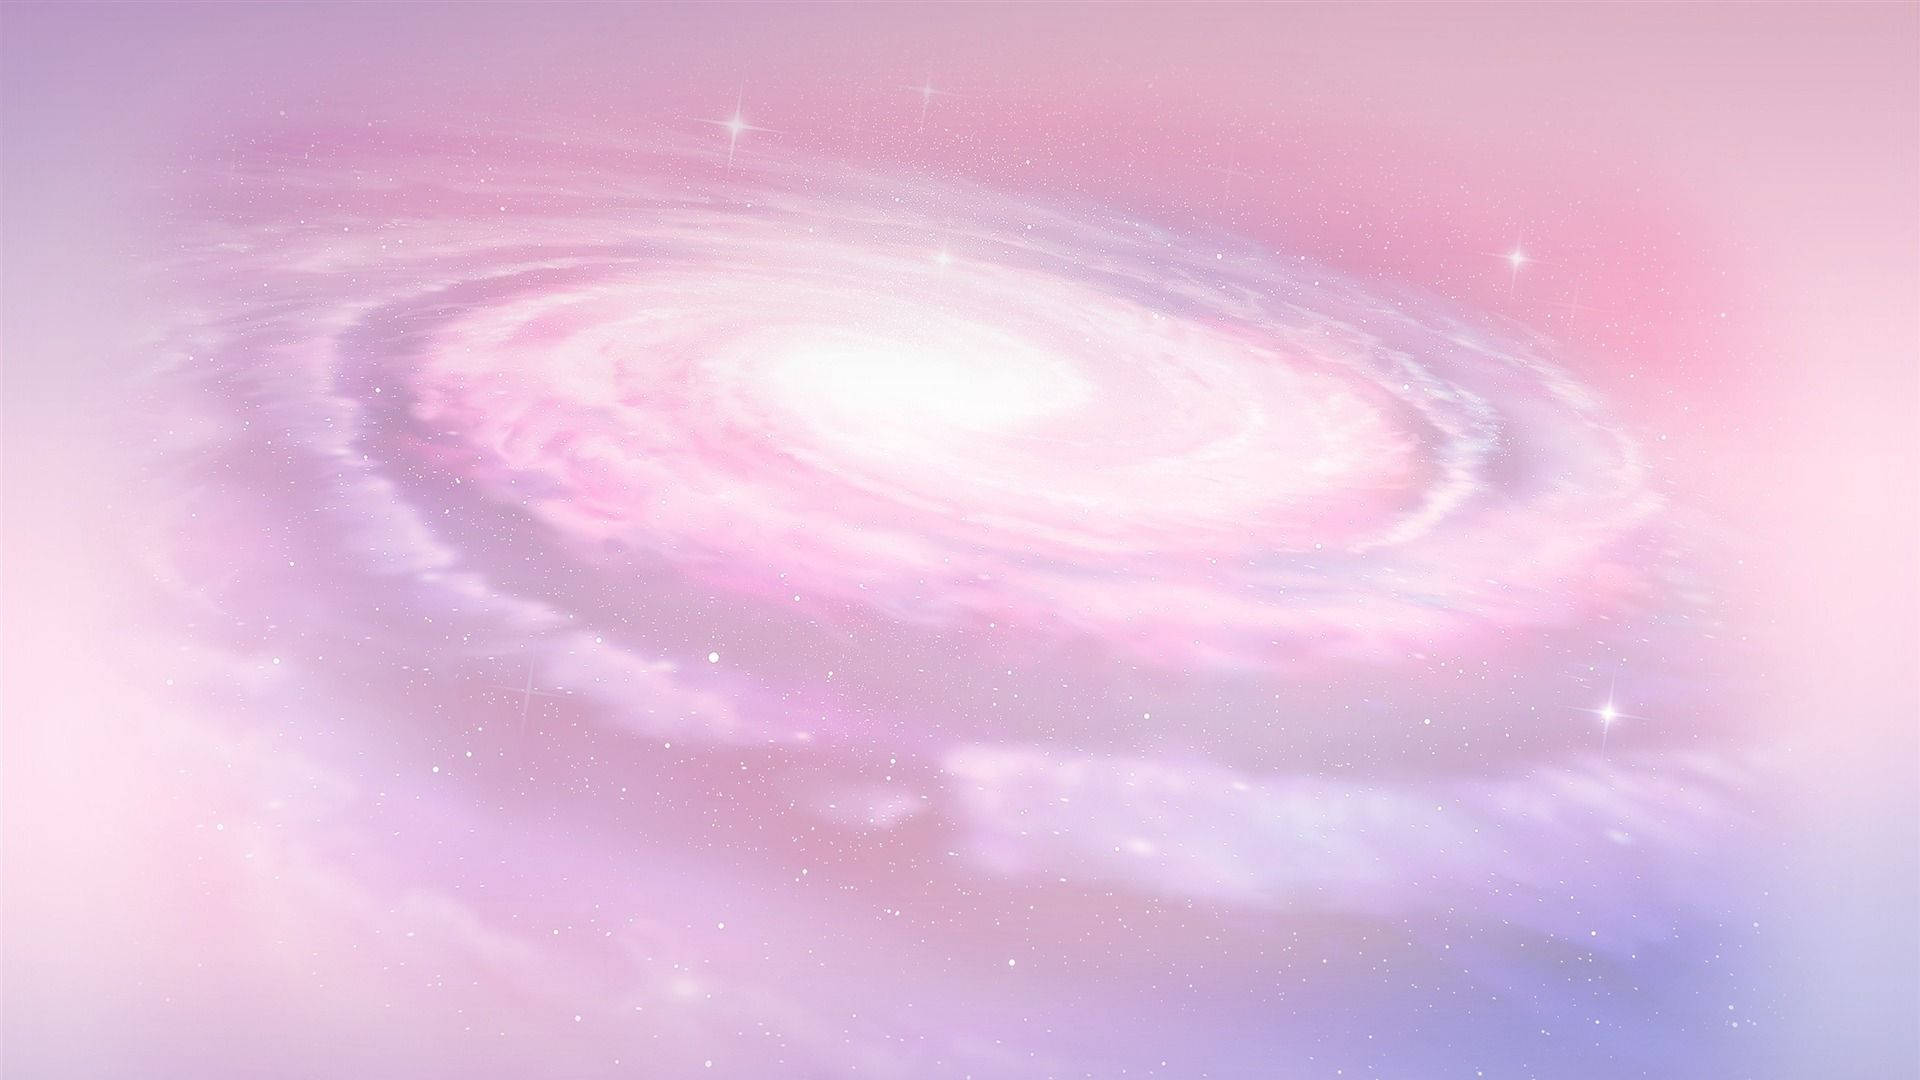 Galaxie Hintergrundbild 1920x1080. Free Cute Galaxy Wallpaper Downloads, Cute Galaxy Wallpaper for FREE